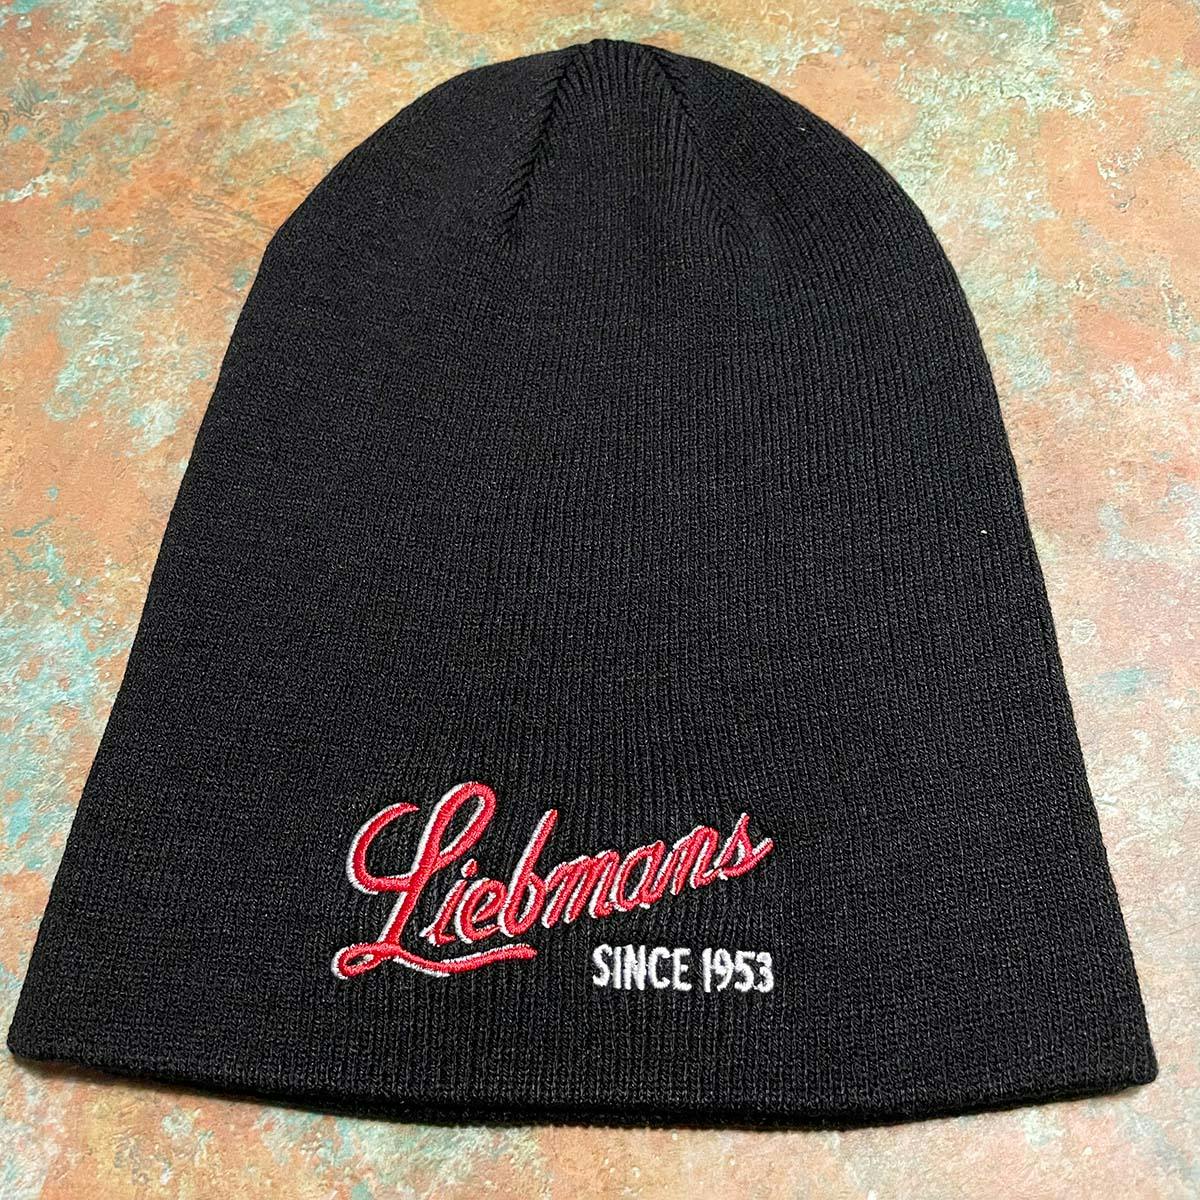 Liebman #39 s Deli Beanie Hat by Liebman #39 s Kosher Deli Goldbelly